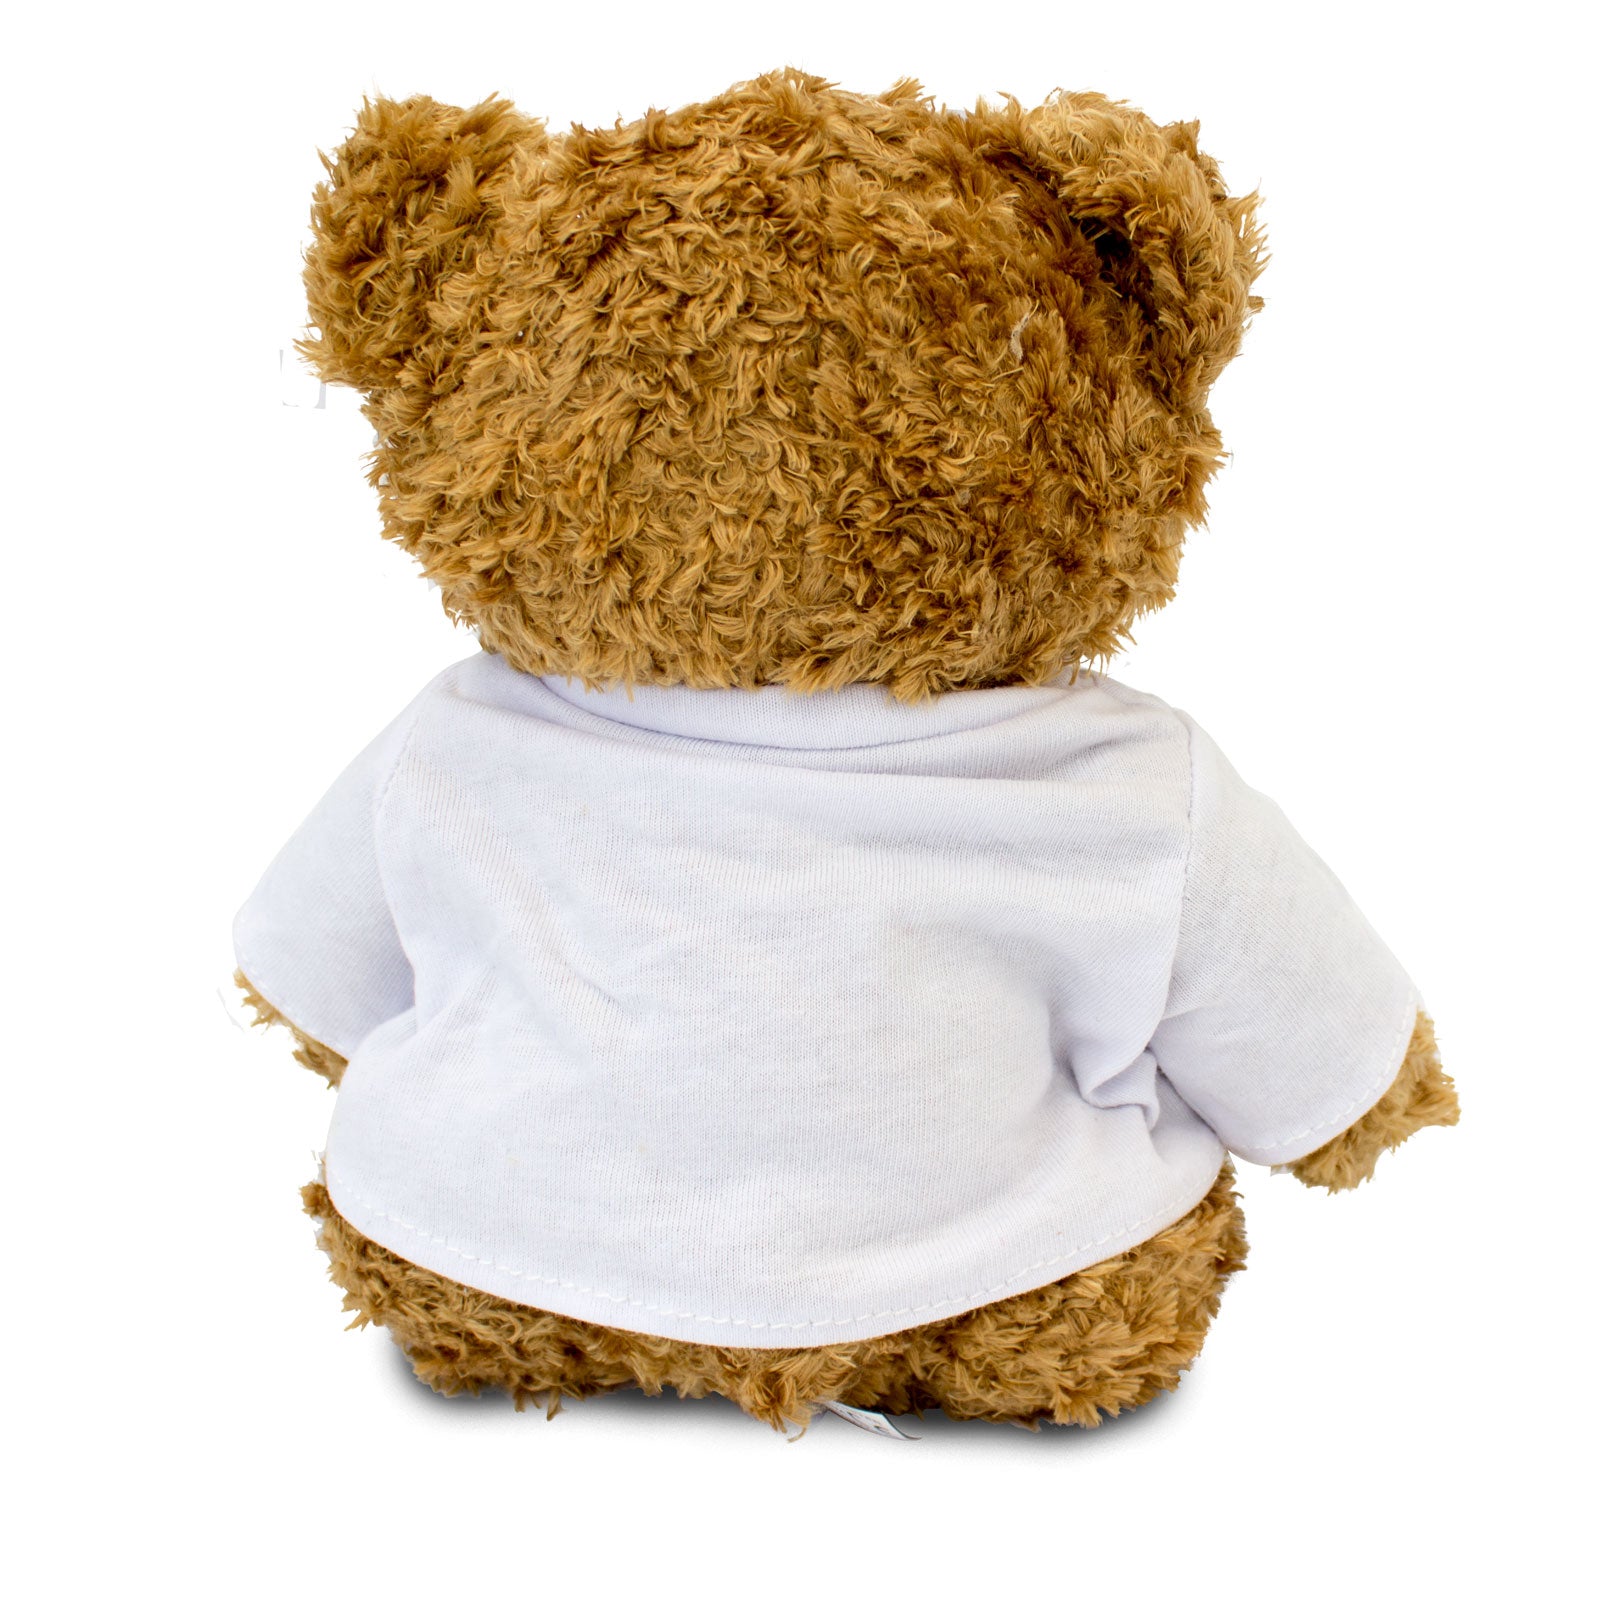 Alles Gute Zum 30 Geburtstag - Teddy Bear - Gift Present